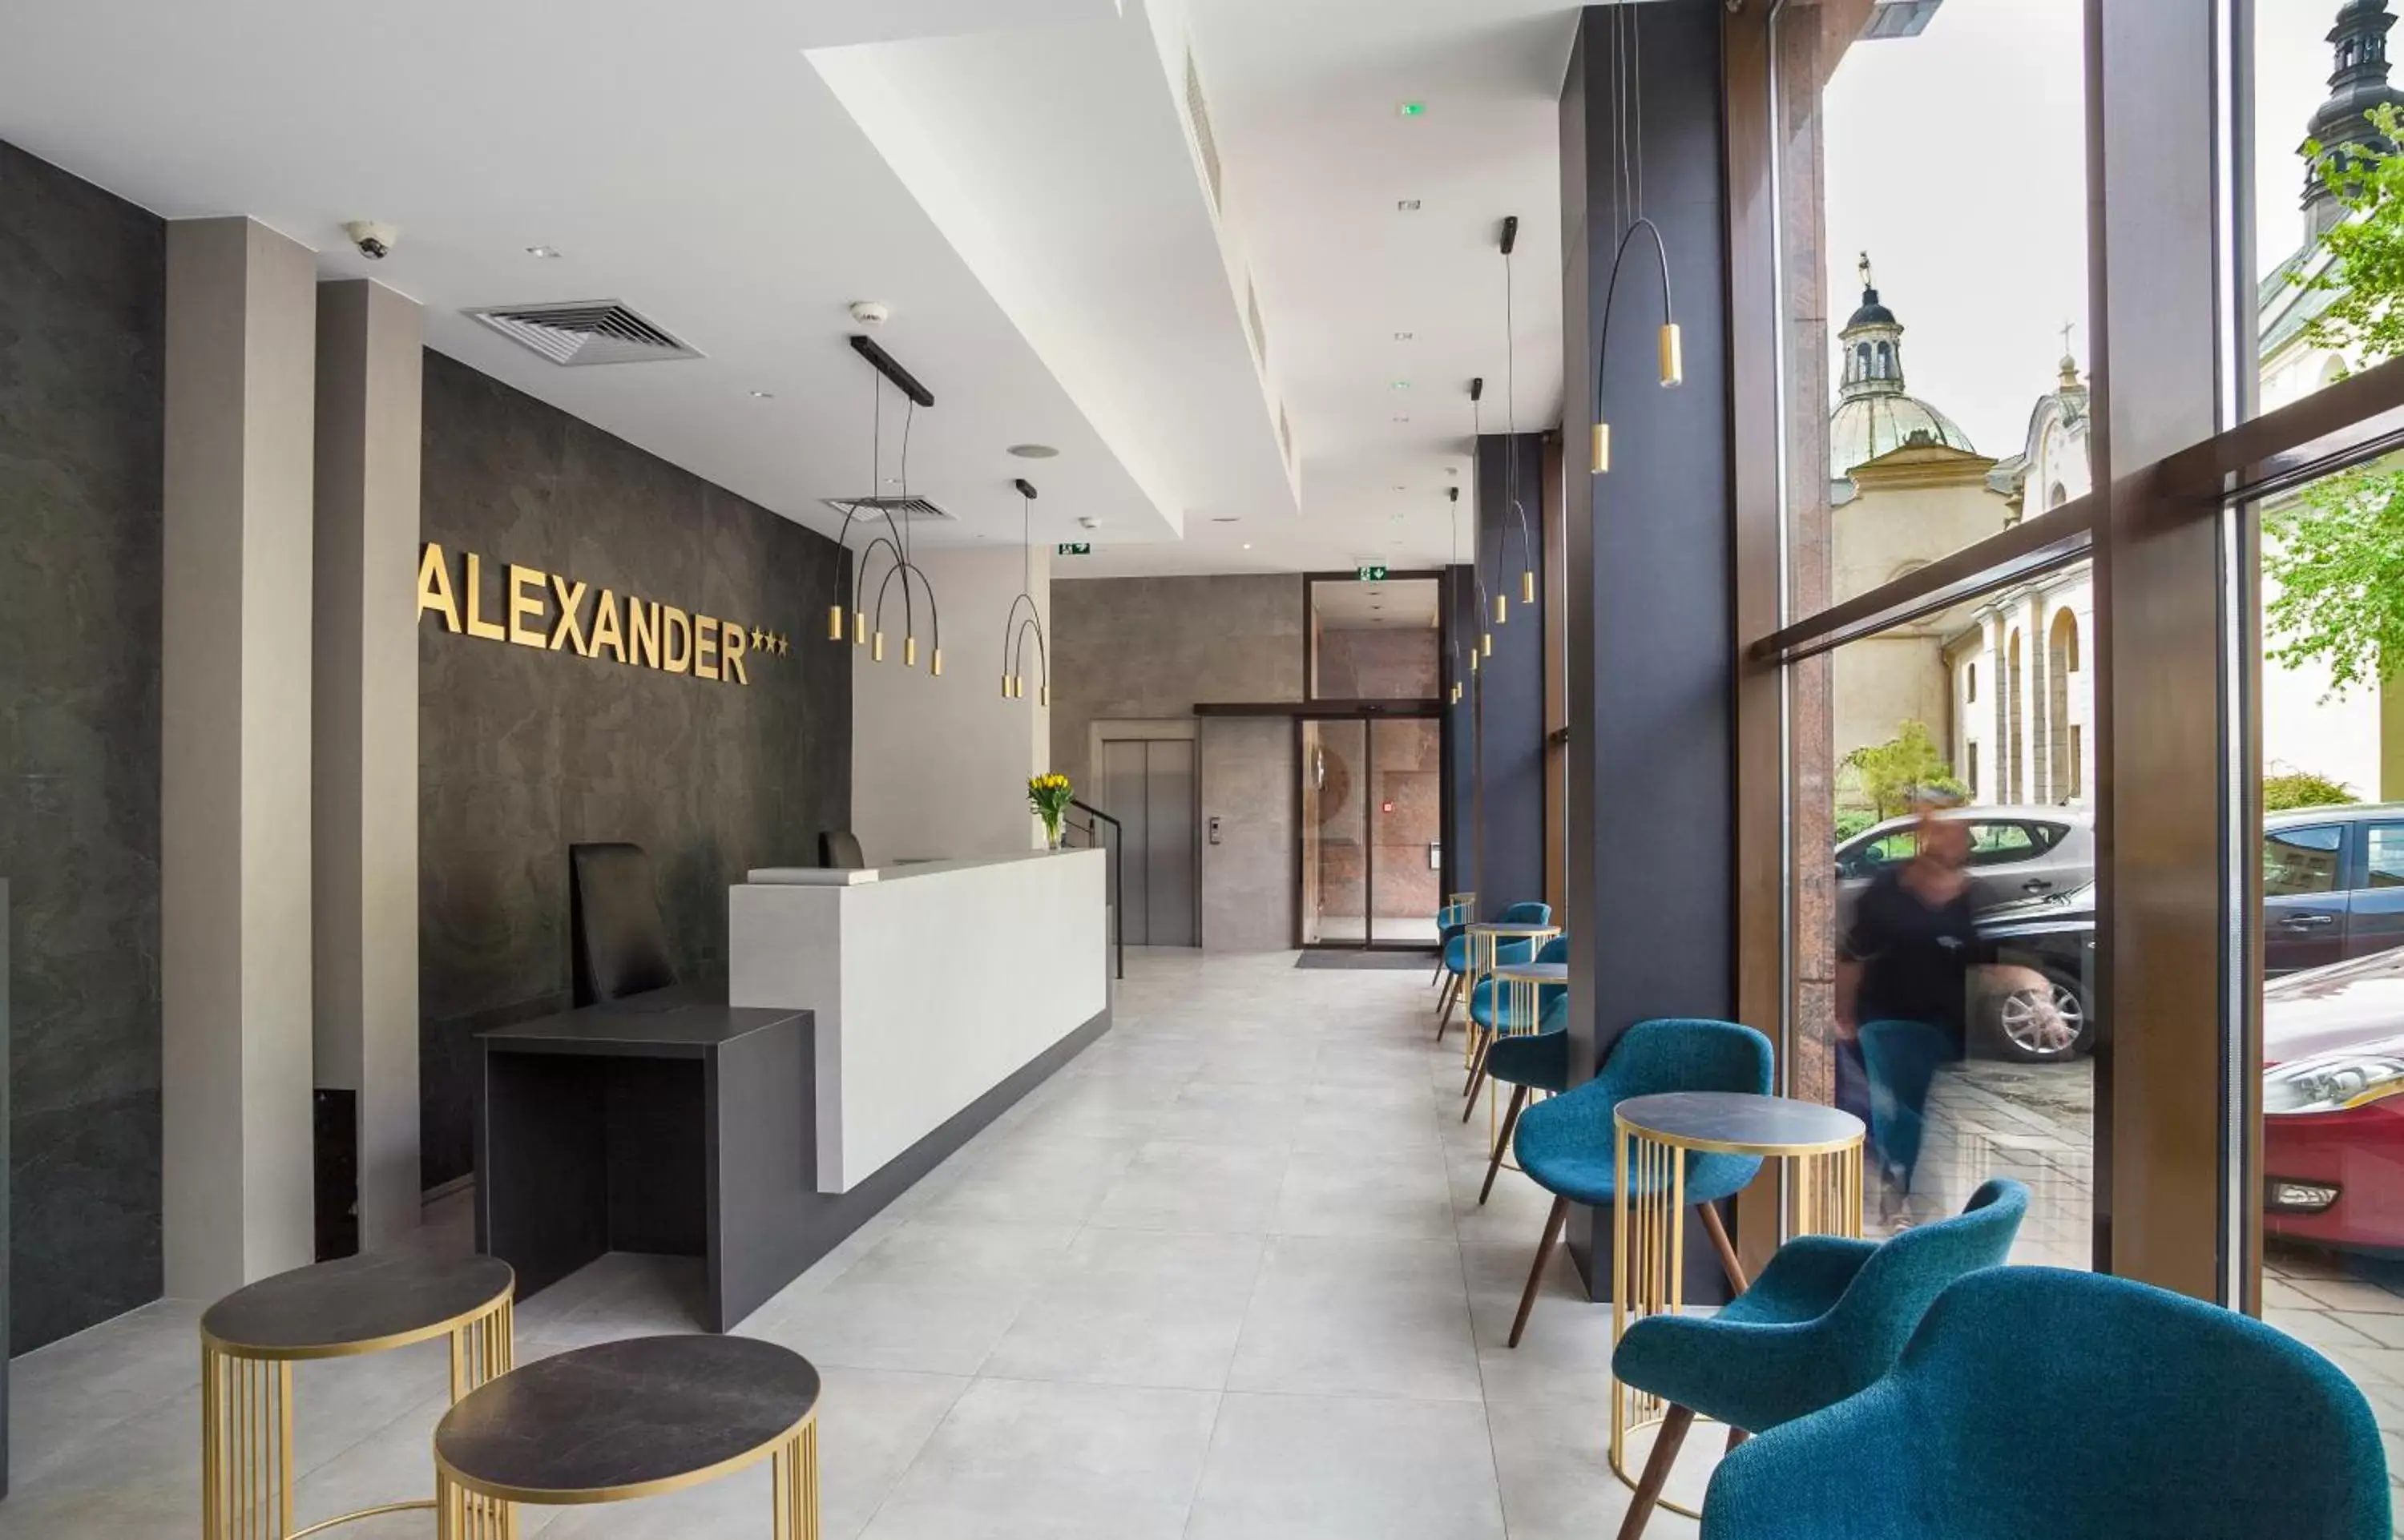 Lobby or reception, Lobby/Reception in Hotel Alexander